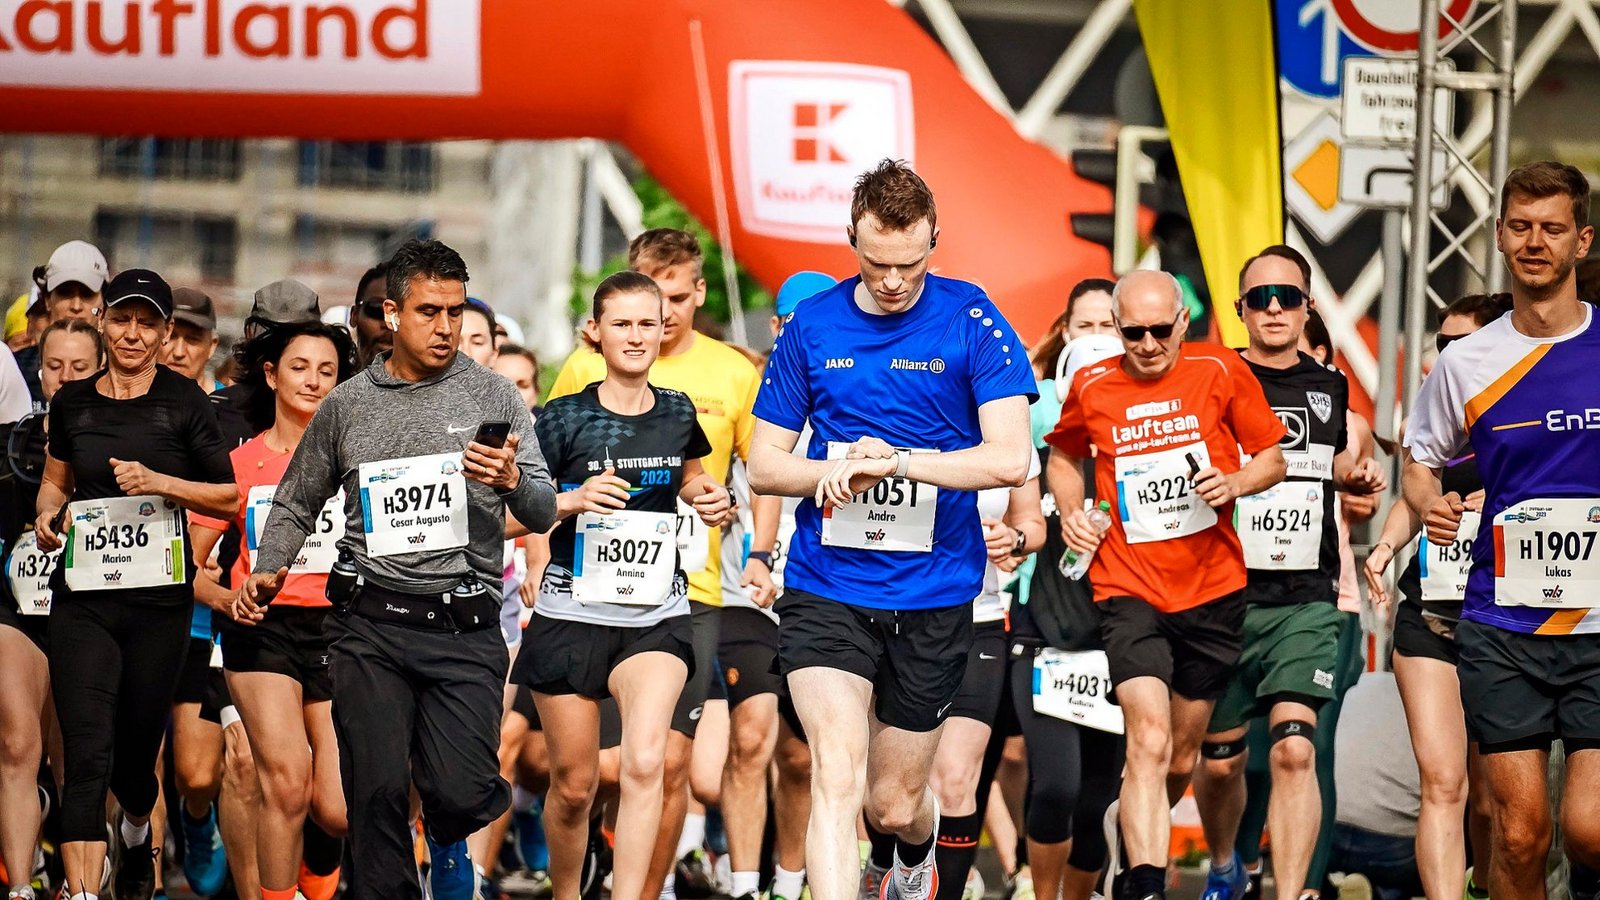 5500 Teilnehmer machten sich am Sonntag auf die Halbmarathonstrecke. Insgesamt waren mehr als 10 000 Laufbegeisterte am Start.Foto: Lichtgut/Ferdinando Iannone